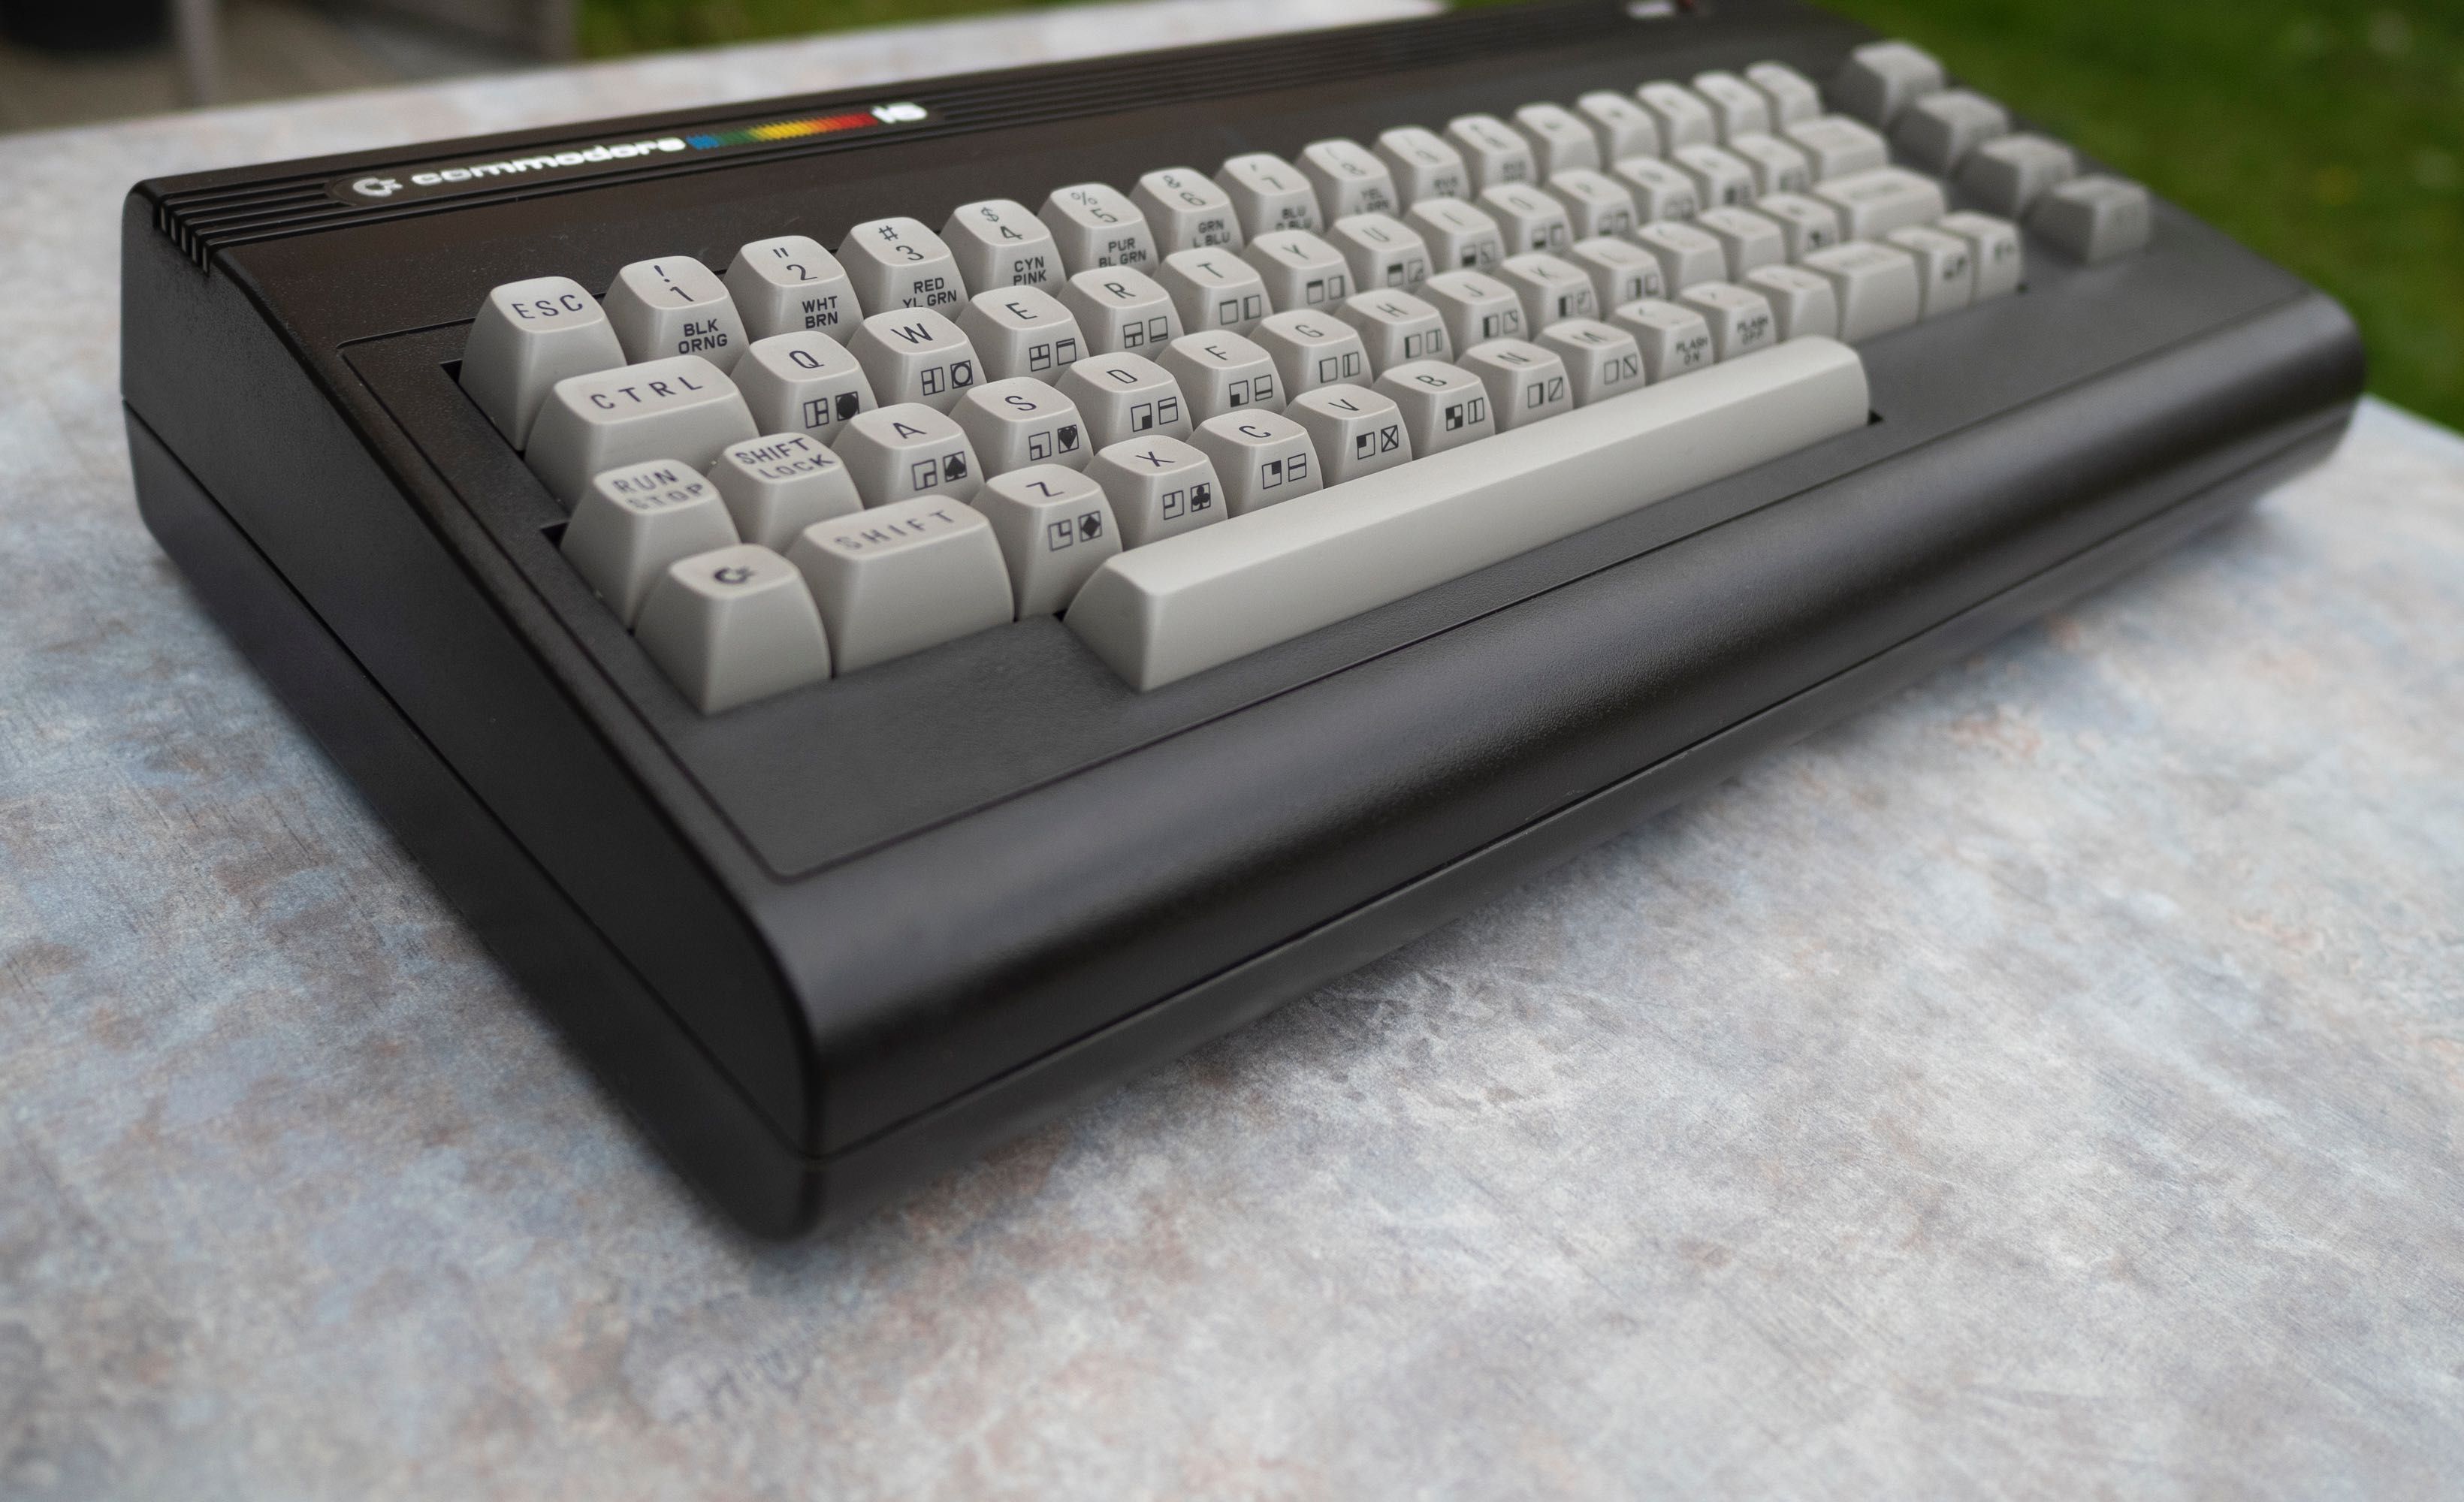 Commodore 16 / C16. Sprawny w wyśmienitym stanie. Made in Germany